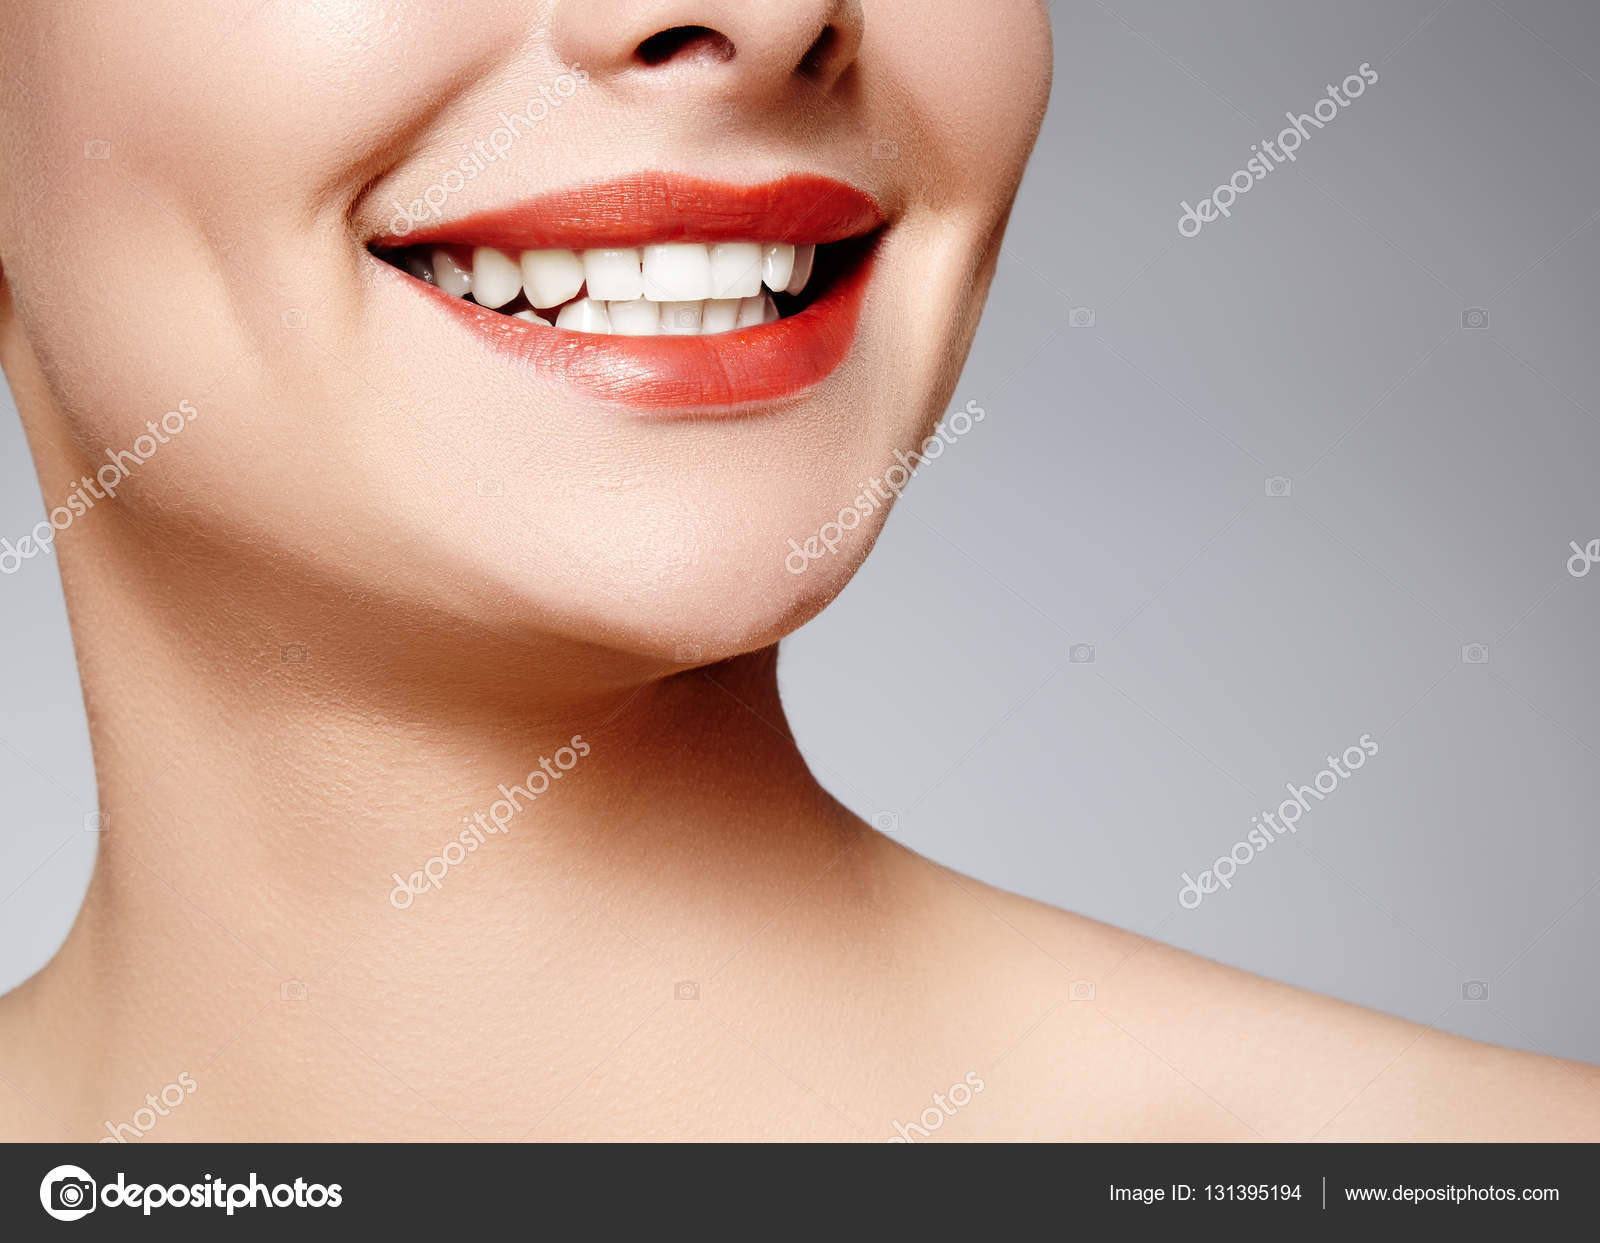 Программа для отбеливания зубов на фото скачать